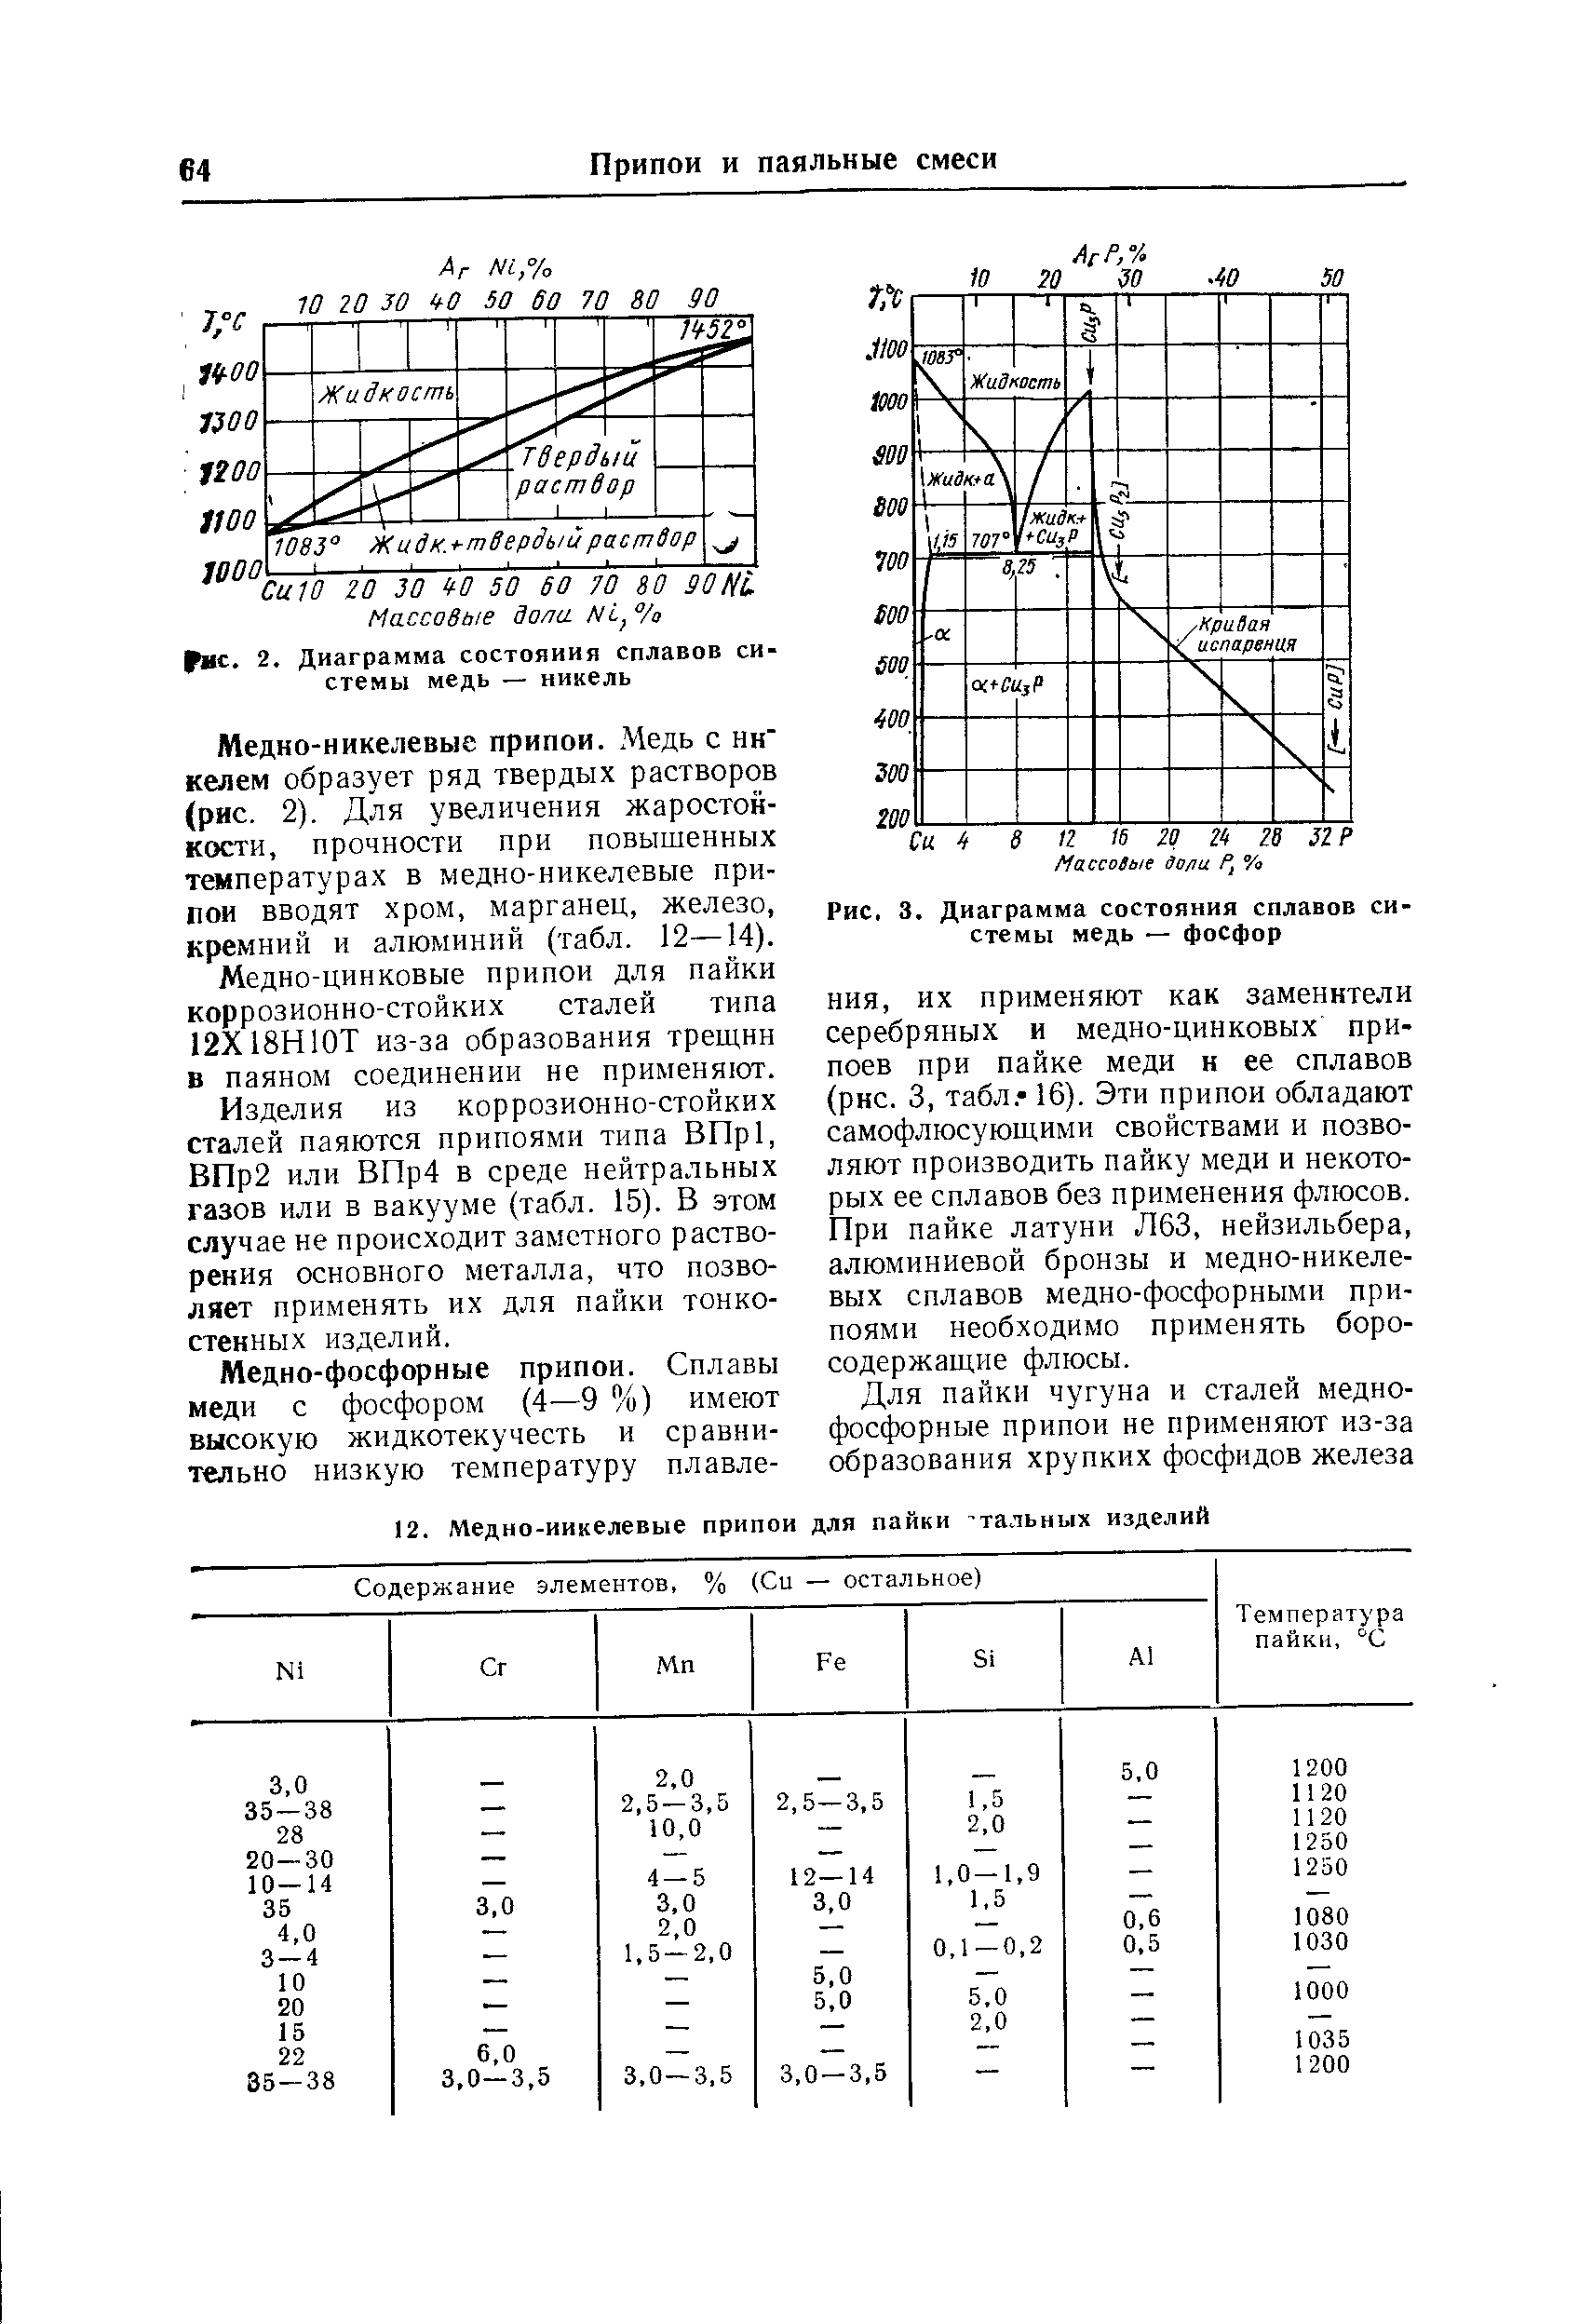 Рис. 3. Диаграмма состояния сплавов системы медь — фосфор
